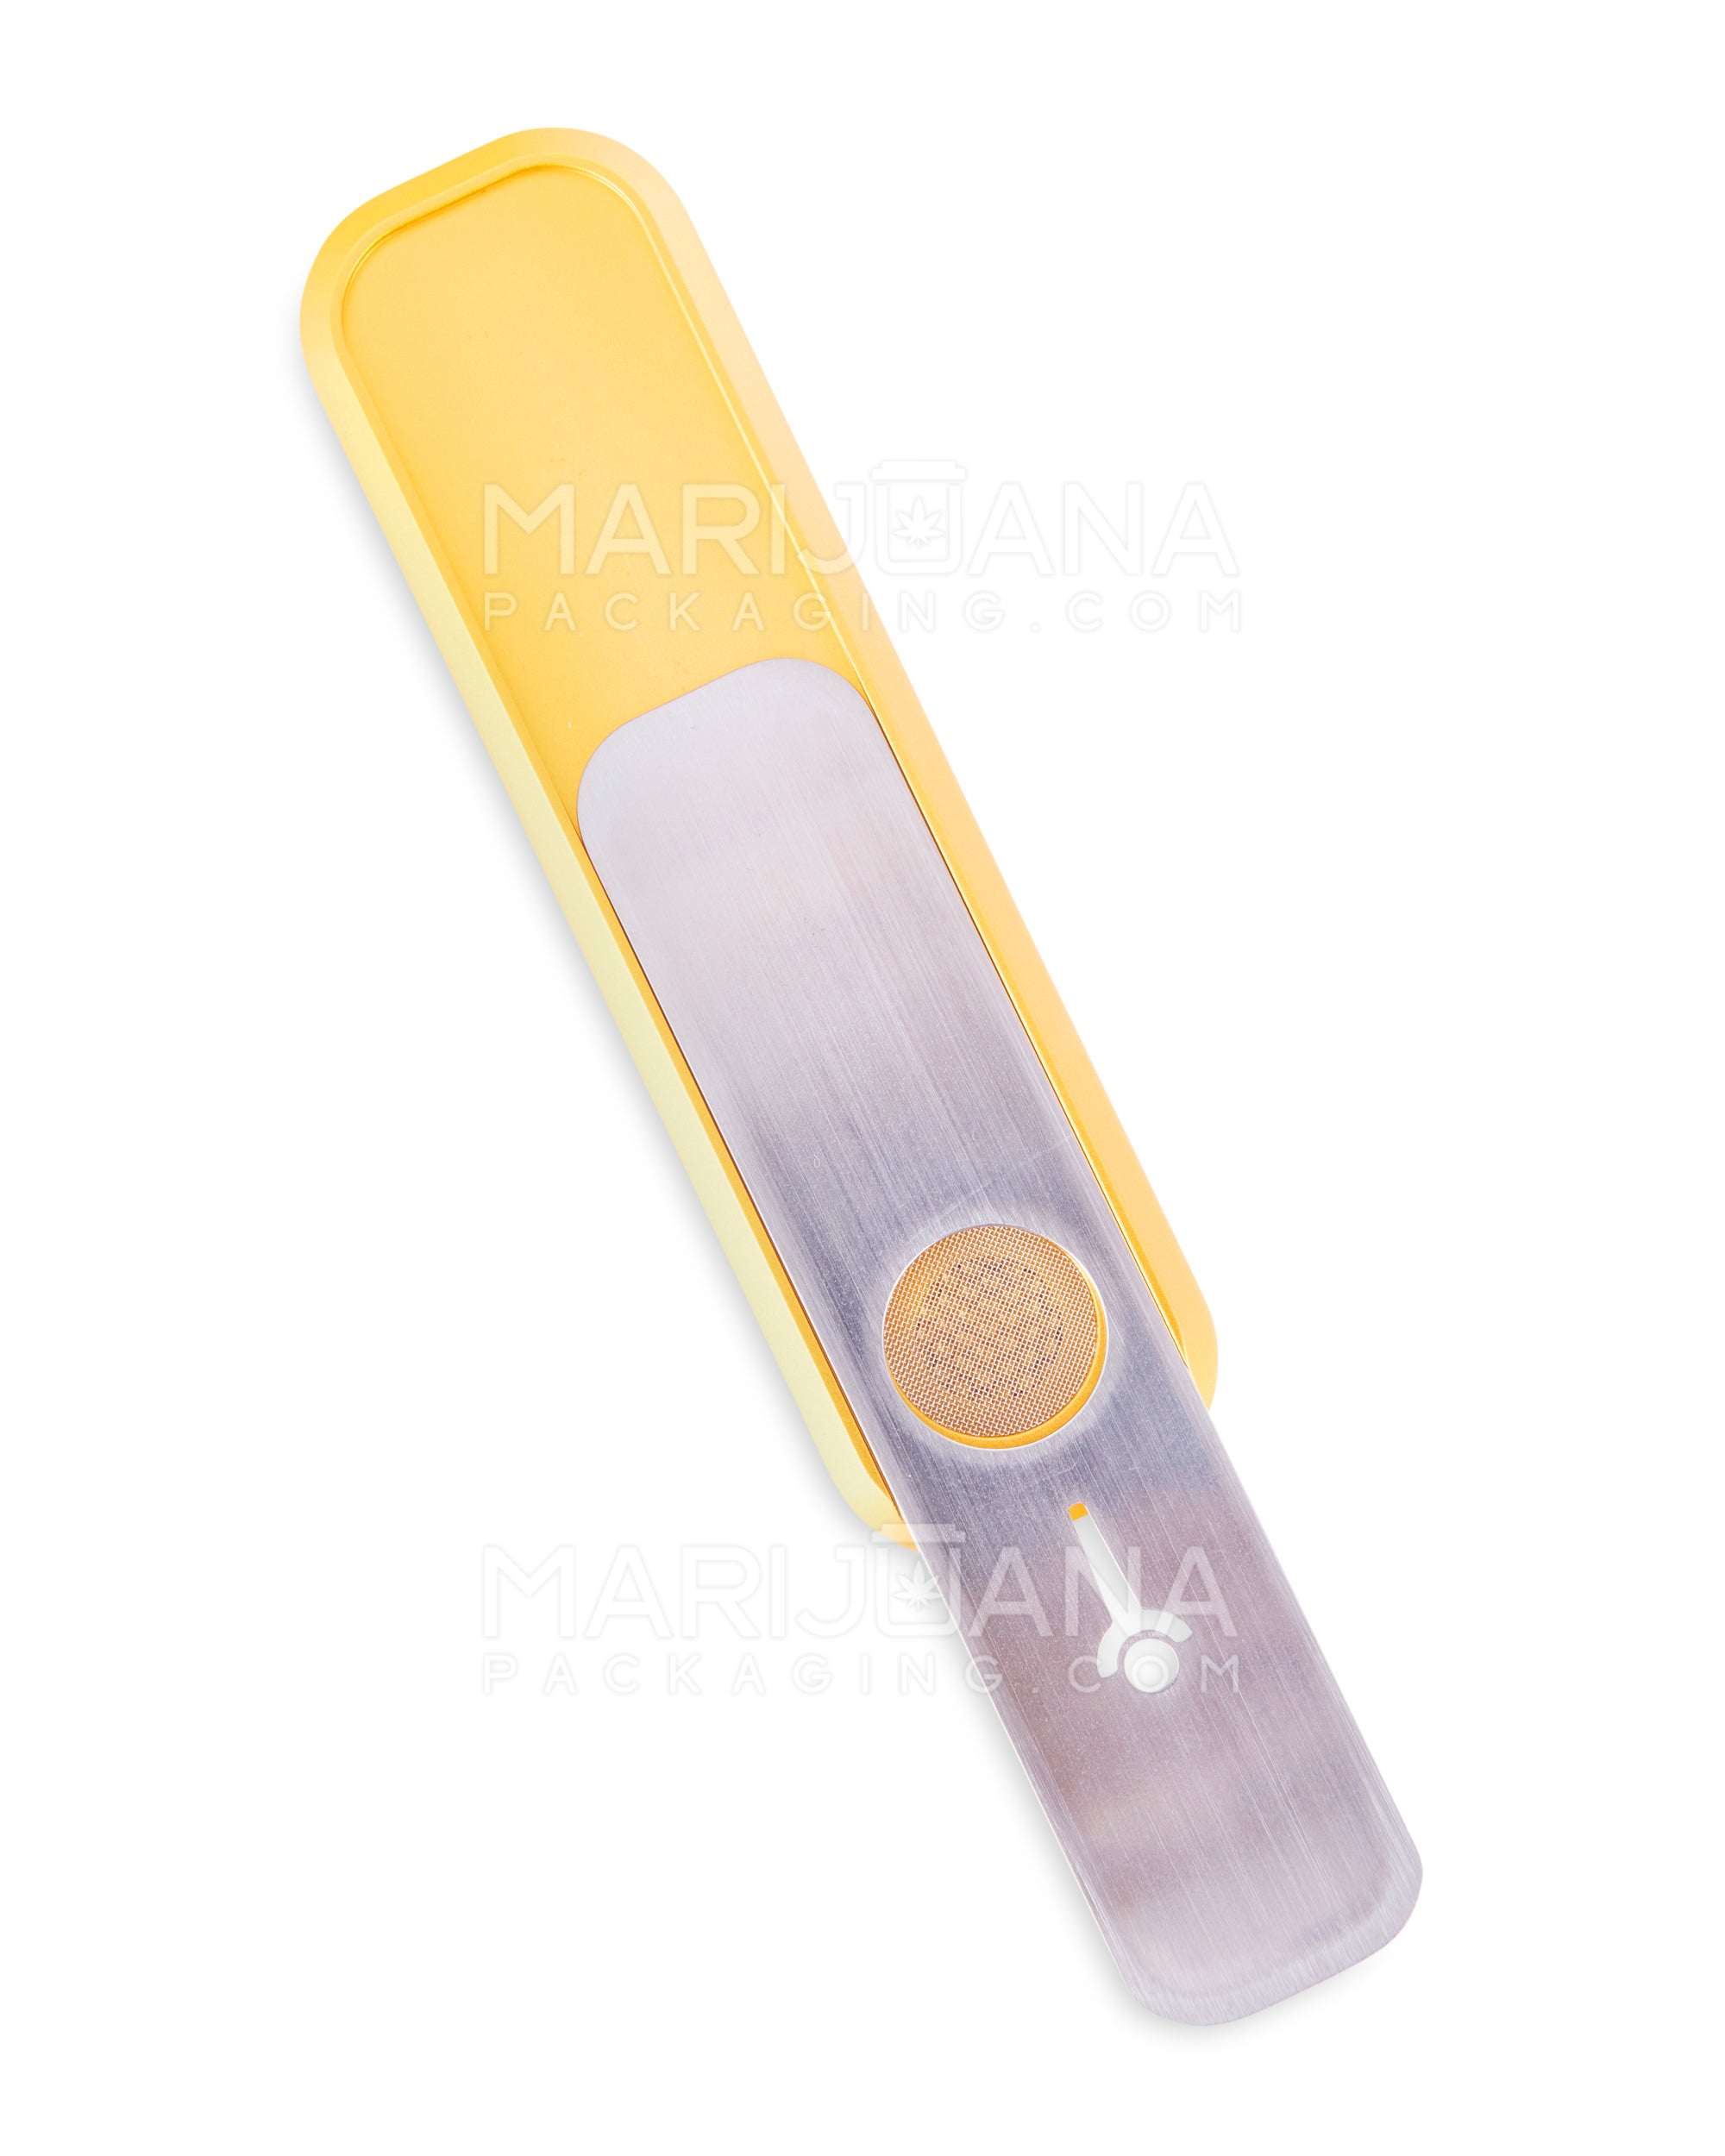 GENIUS PIPE | Mini Color Magnetic Slider Pipe | 5in Long - Metal - Gold - 4